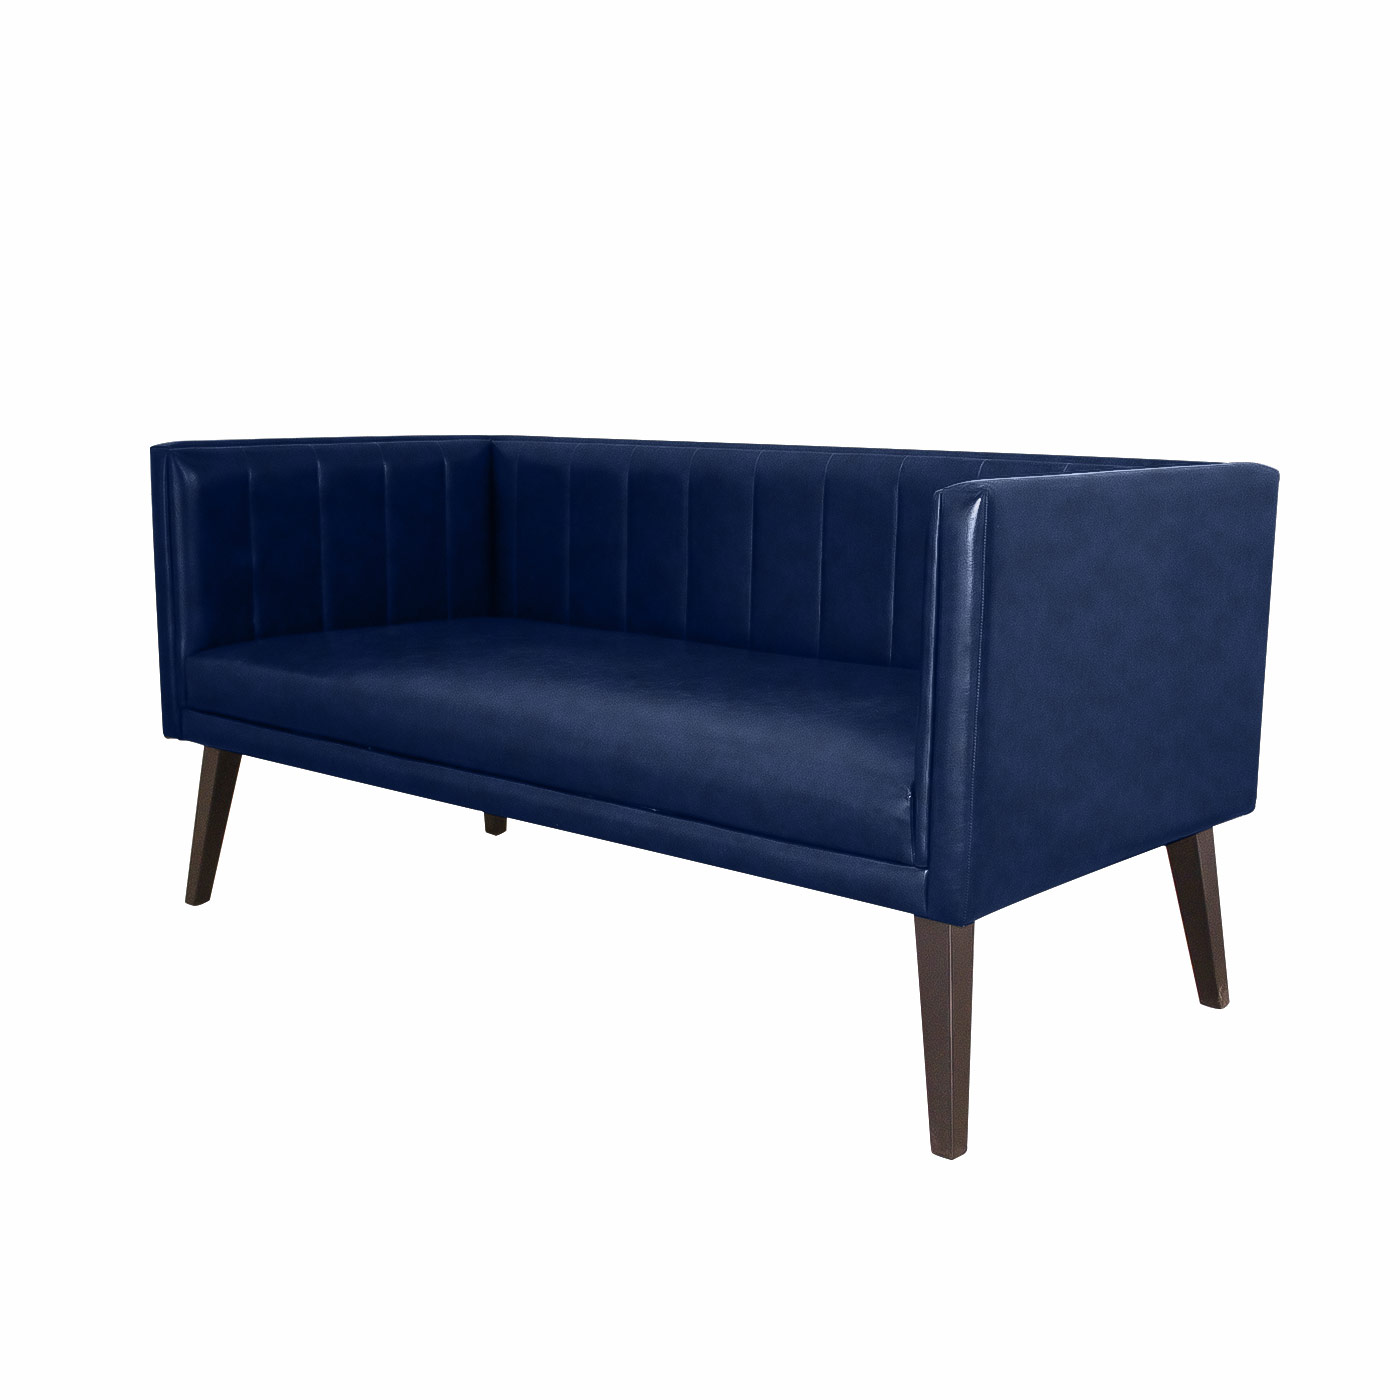 Melrose Textured Dark Blue Dark Double Sofa